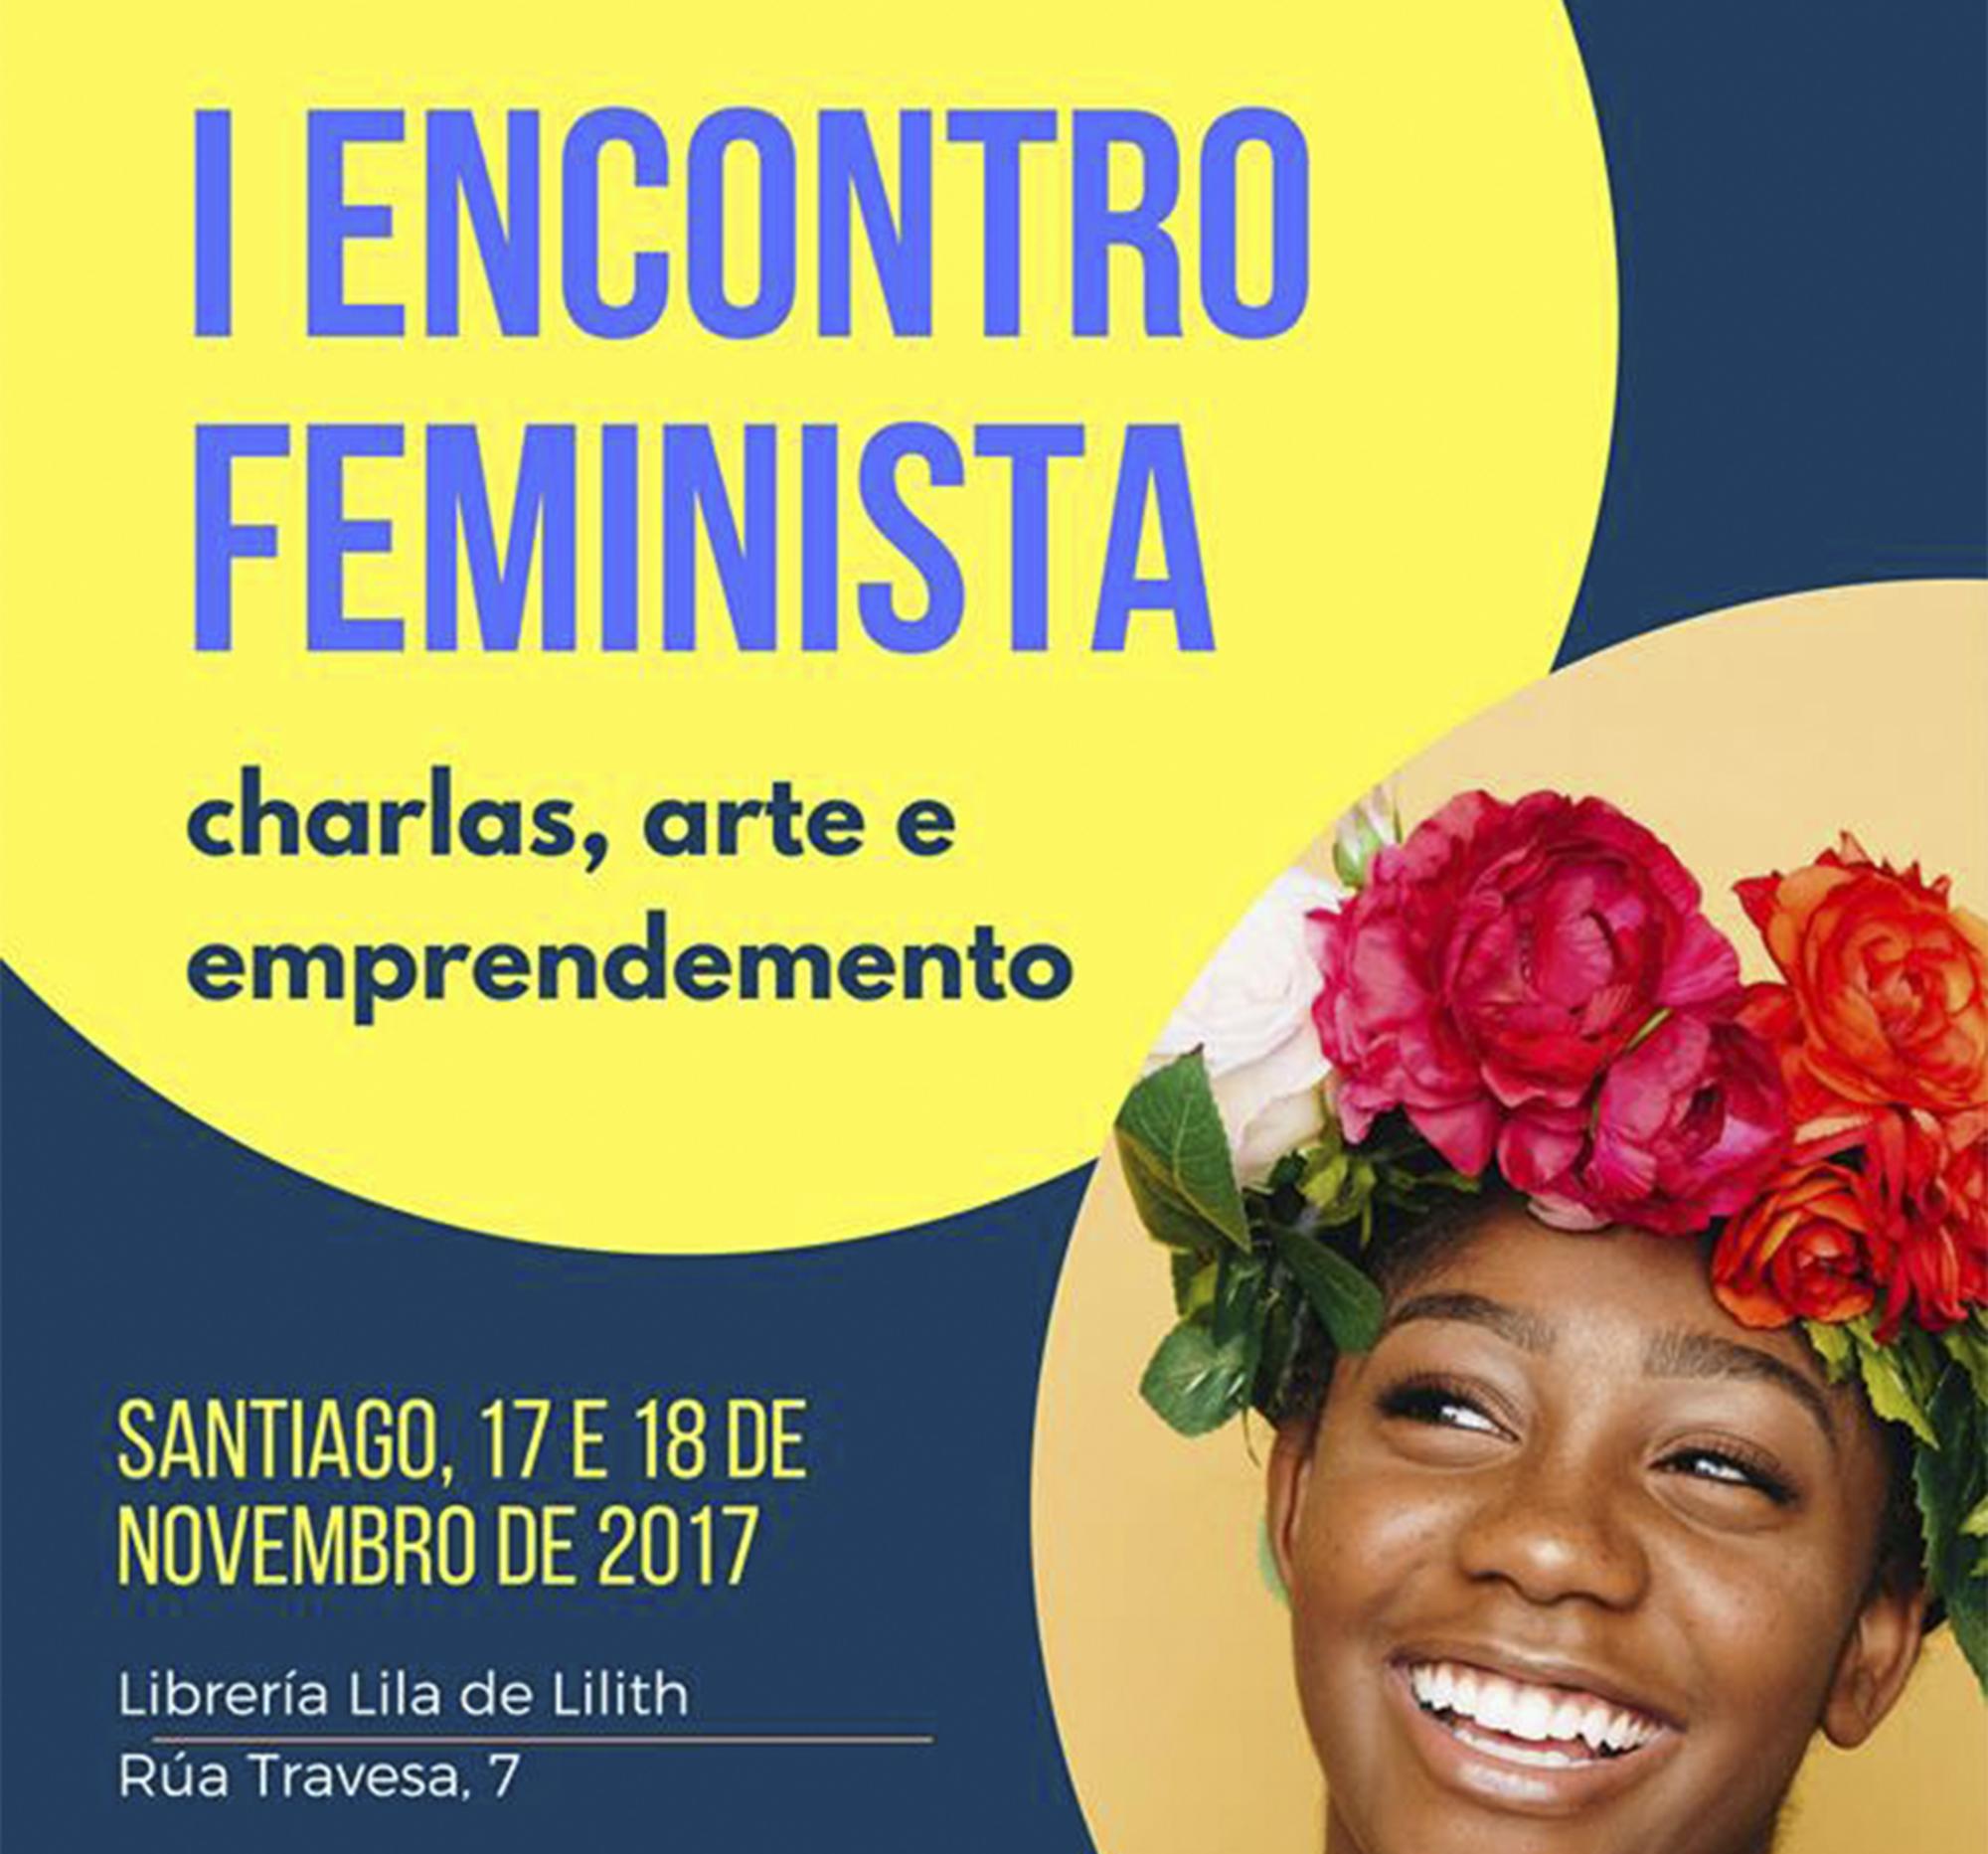 Organizado por Periféricas, a Escola de Feminismos Alternativos. 